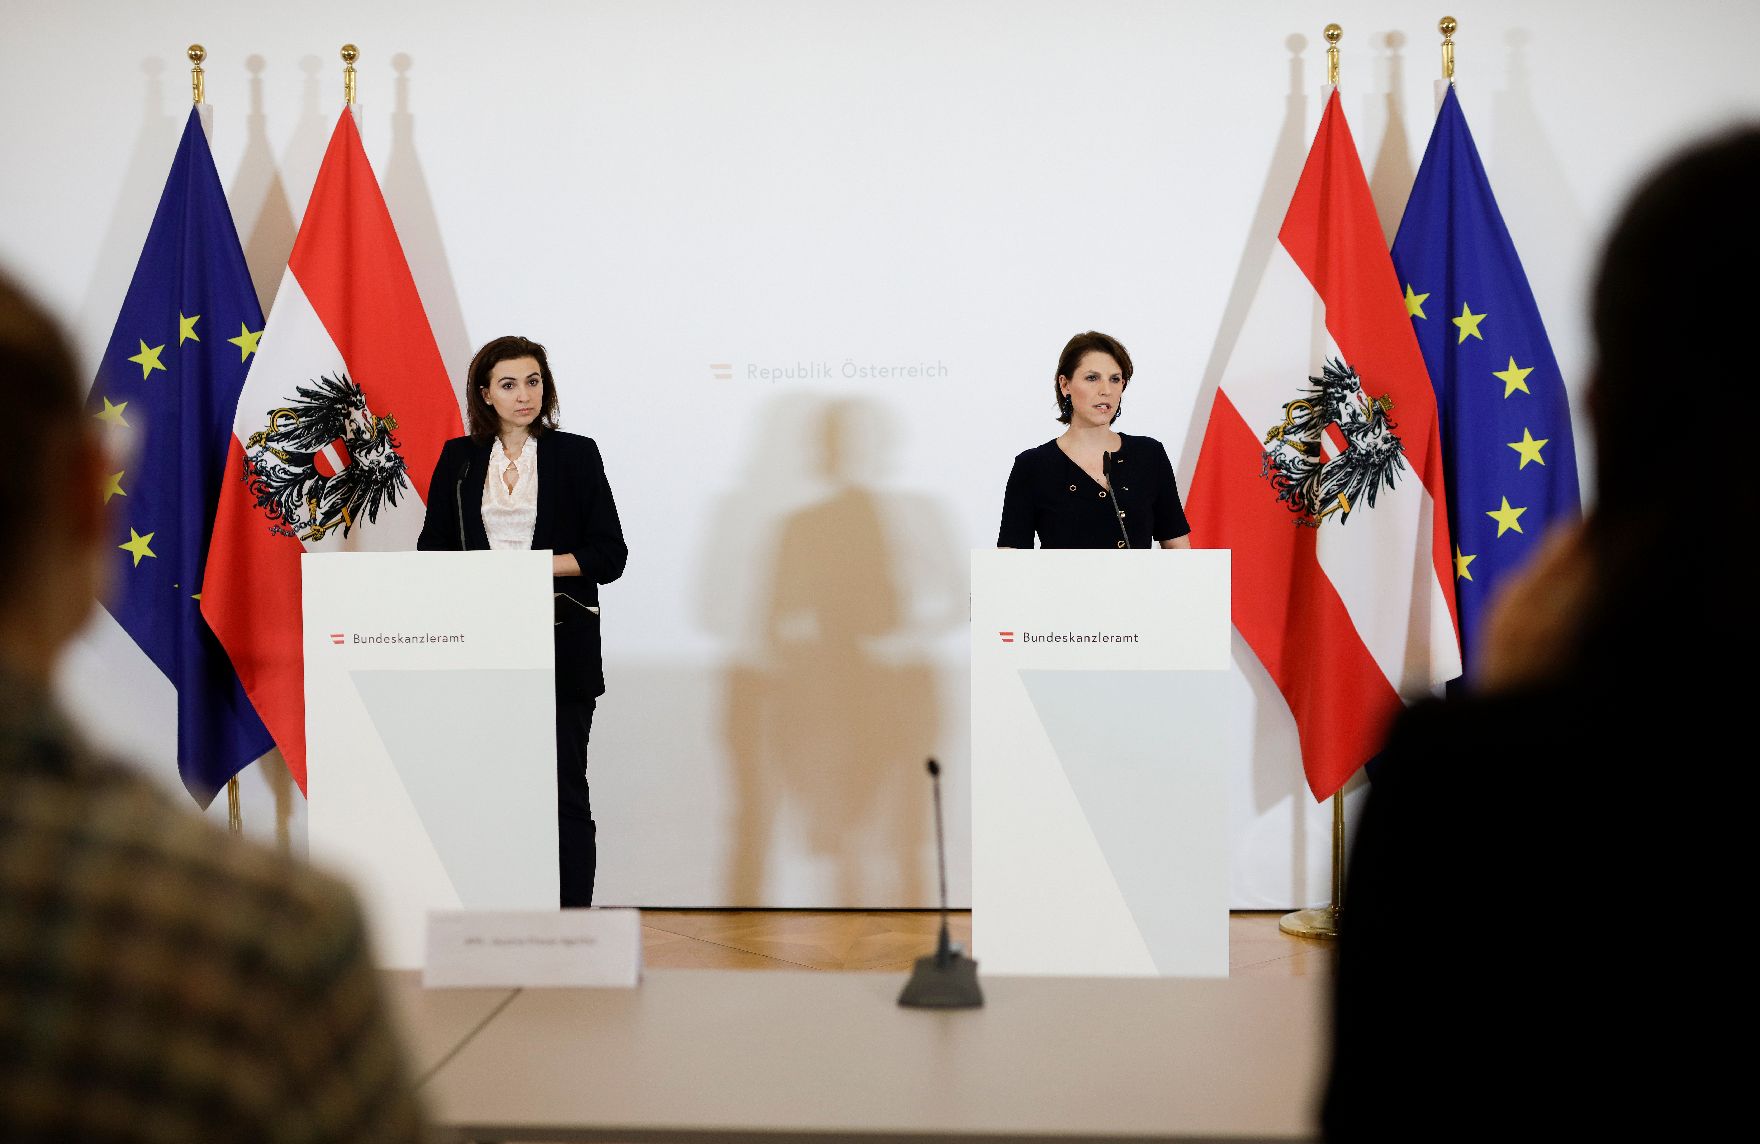 Am 17. März 2020 fand eine Pressekonferenz zu den neuesten Entwicklungen in Sachen Coronavirus statt. Im Bild Bundesministerin Karoline Edtstadler (r.) mit Bundesministerin Alma Zadić (l.).